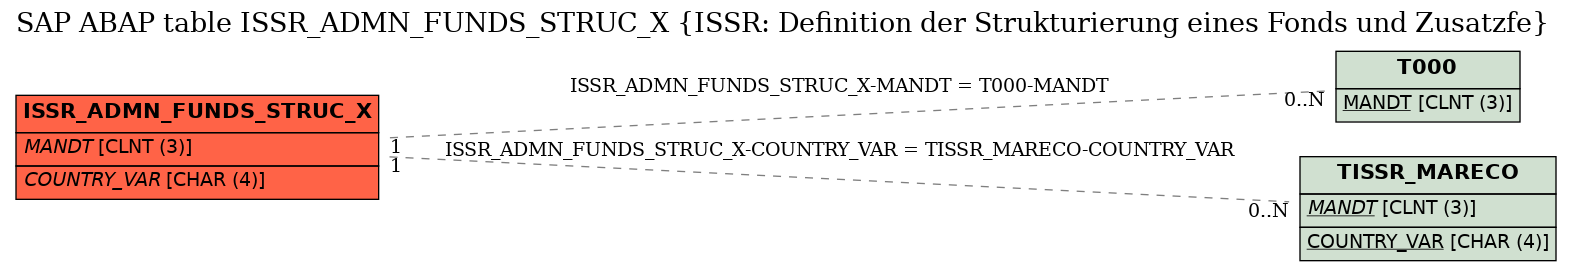 E-R Diagram for table ISSR_ADMN_FUNDS_STRUC_X (ISSR: Definition der Strukturierung eines Fonds und Zusatzfe)